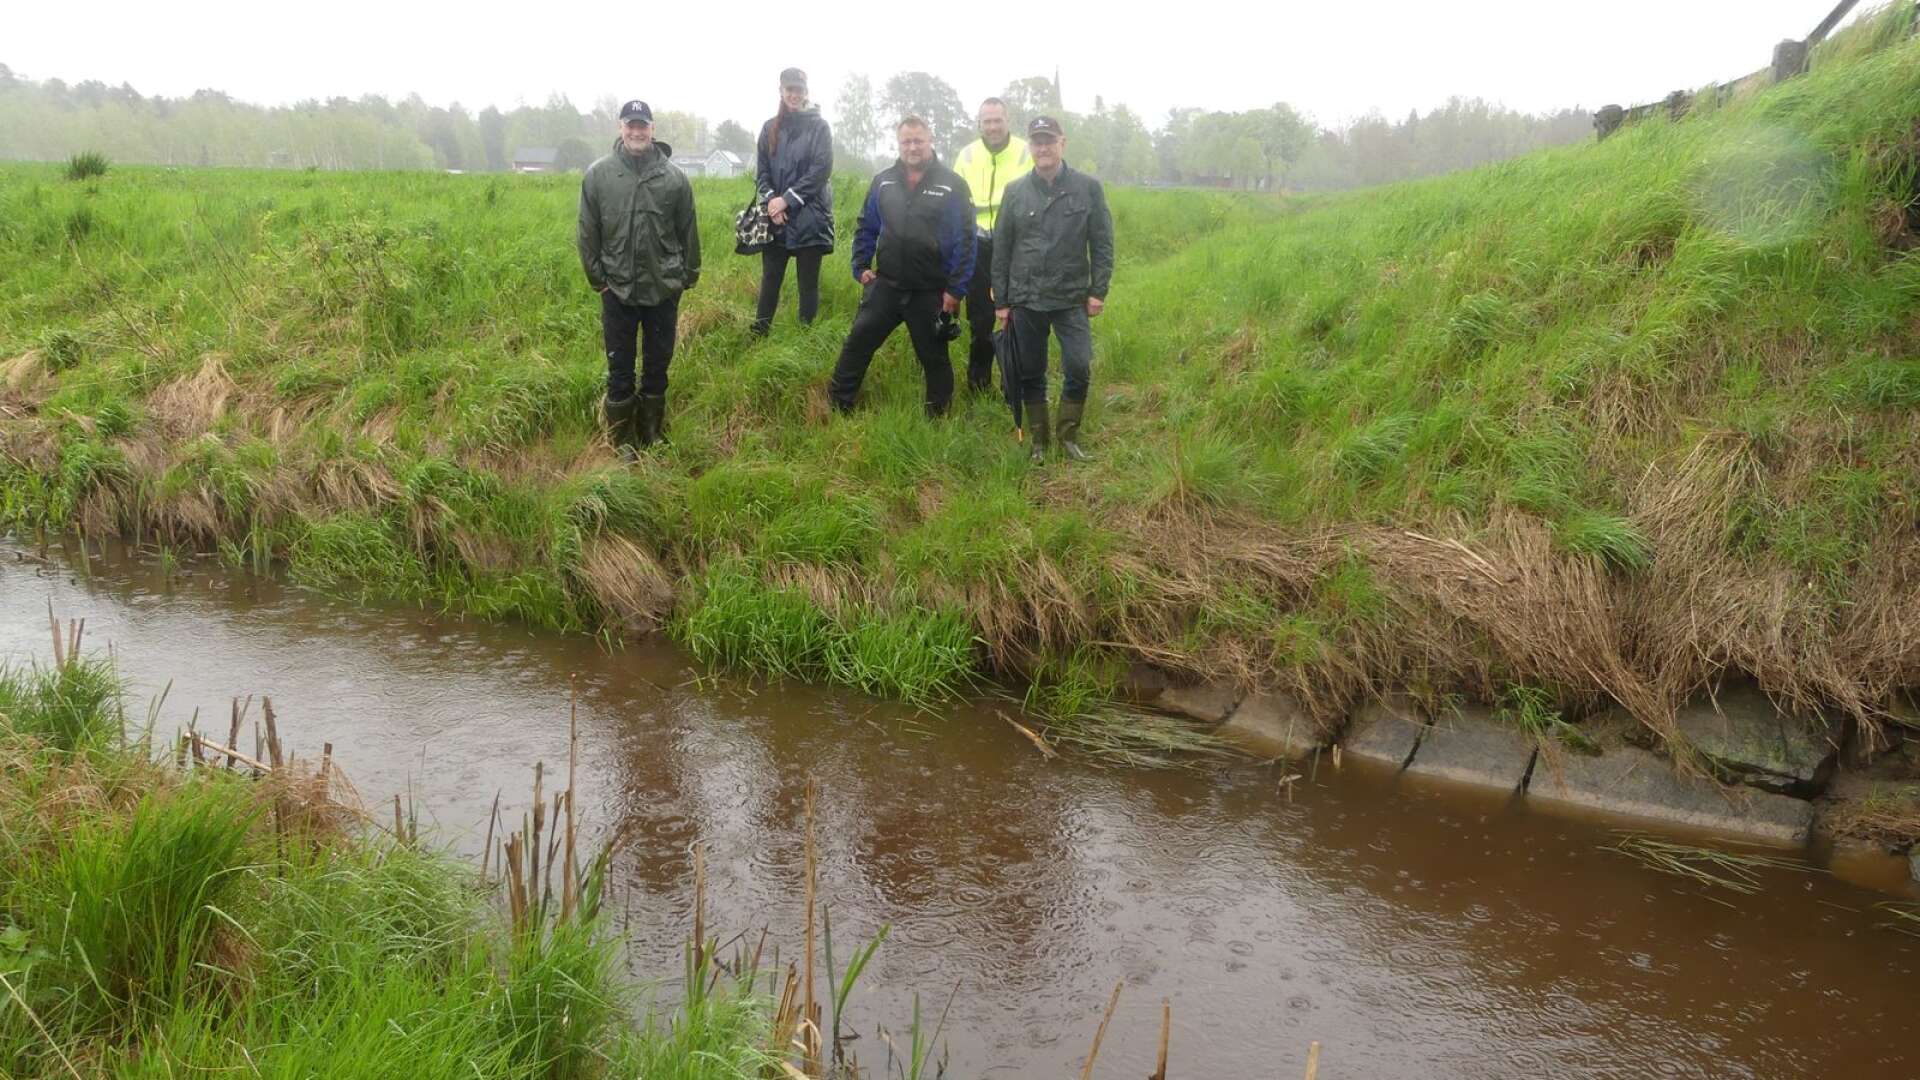 Vattendirektiven oroar lantbrukarna. På bilden vid Averstadån syns från vänster Daniel Bäckström, Kajsa Edbom, Håkan Thörner, Mikael Johansson och Dag Rogne.